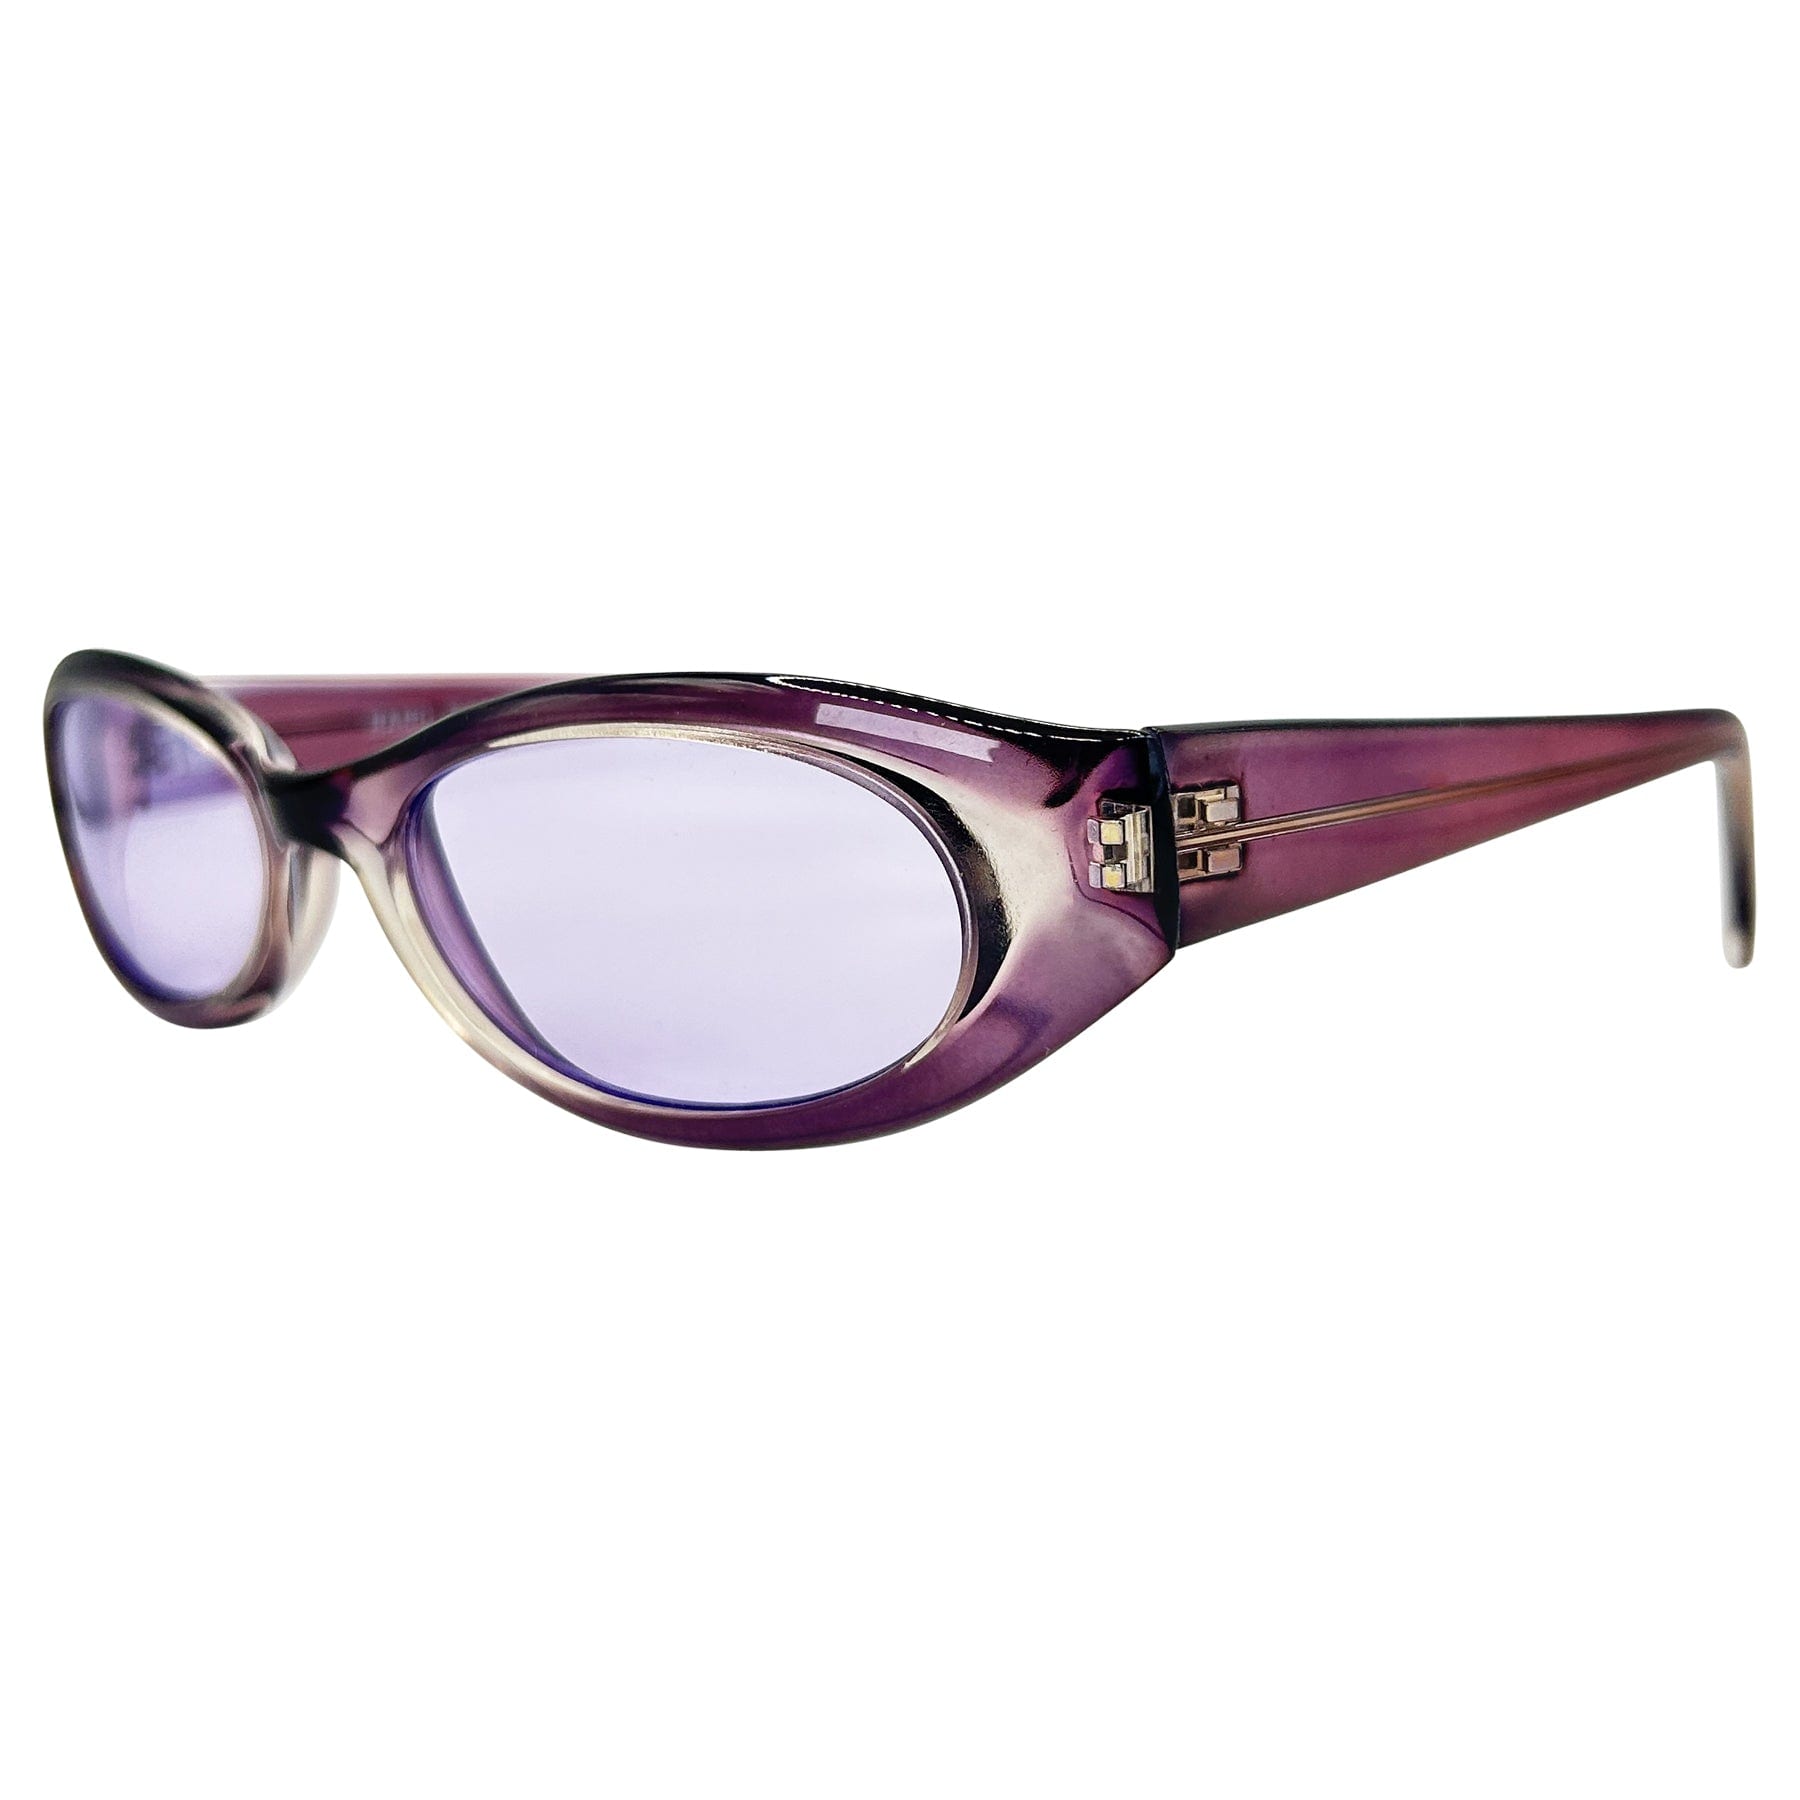 90s retro sunglasses with a lilac frame and lens